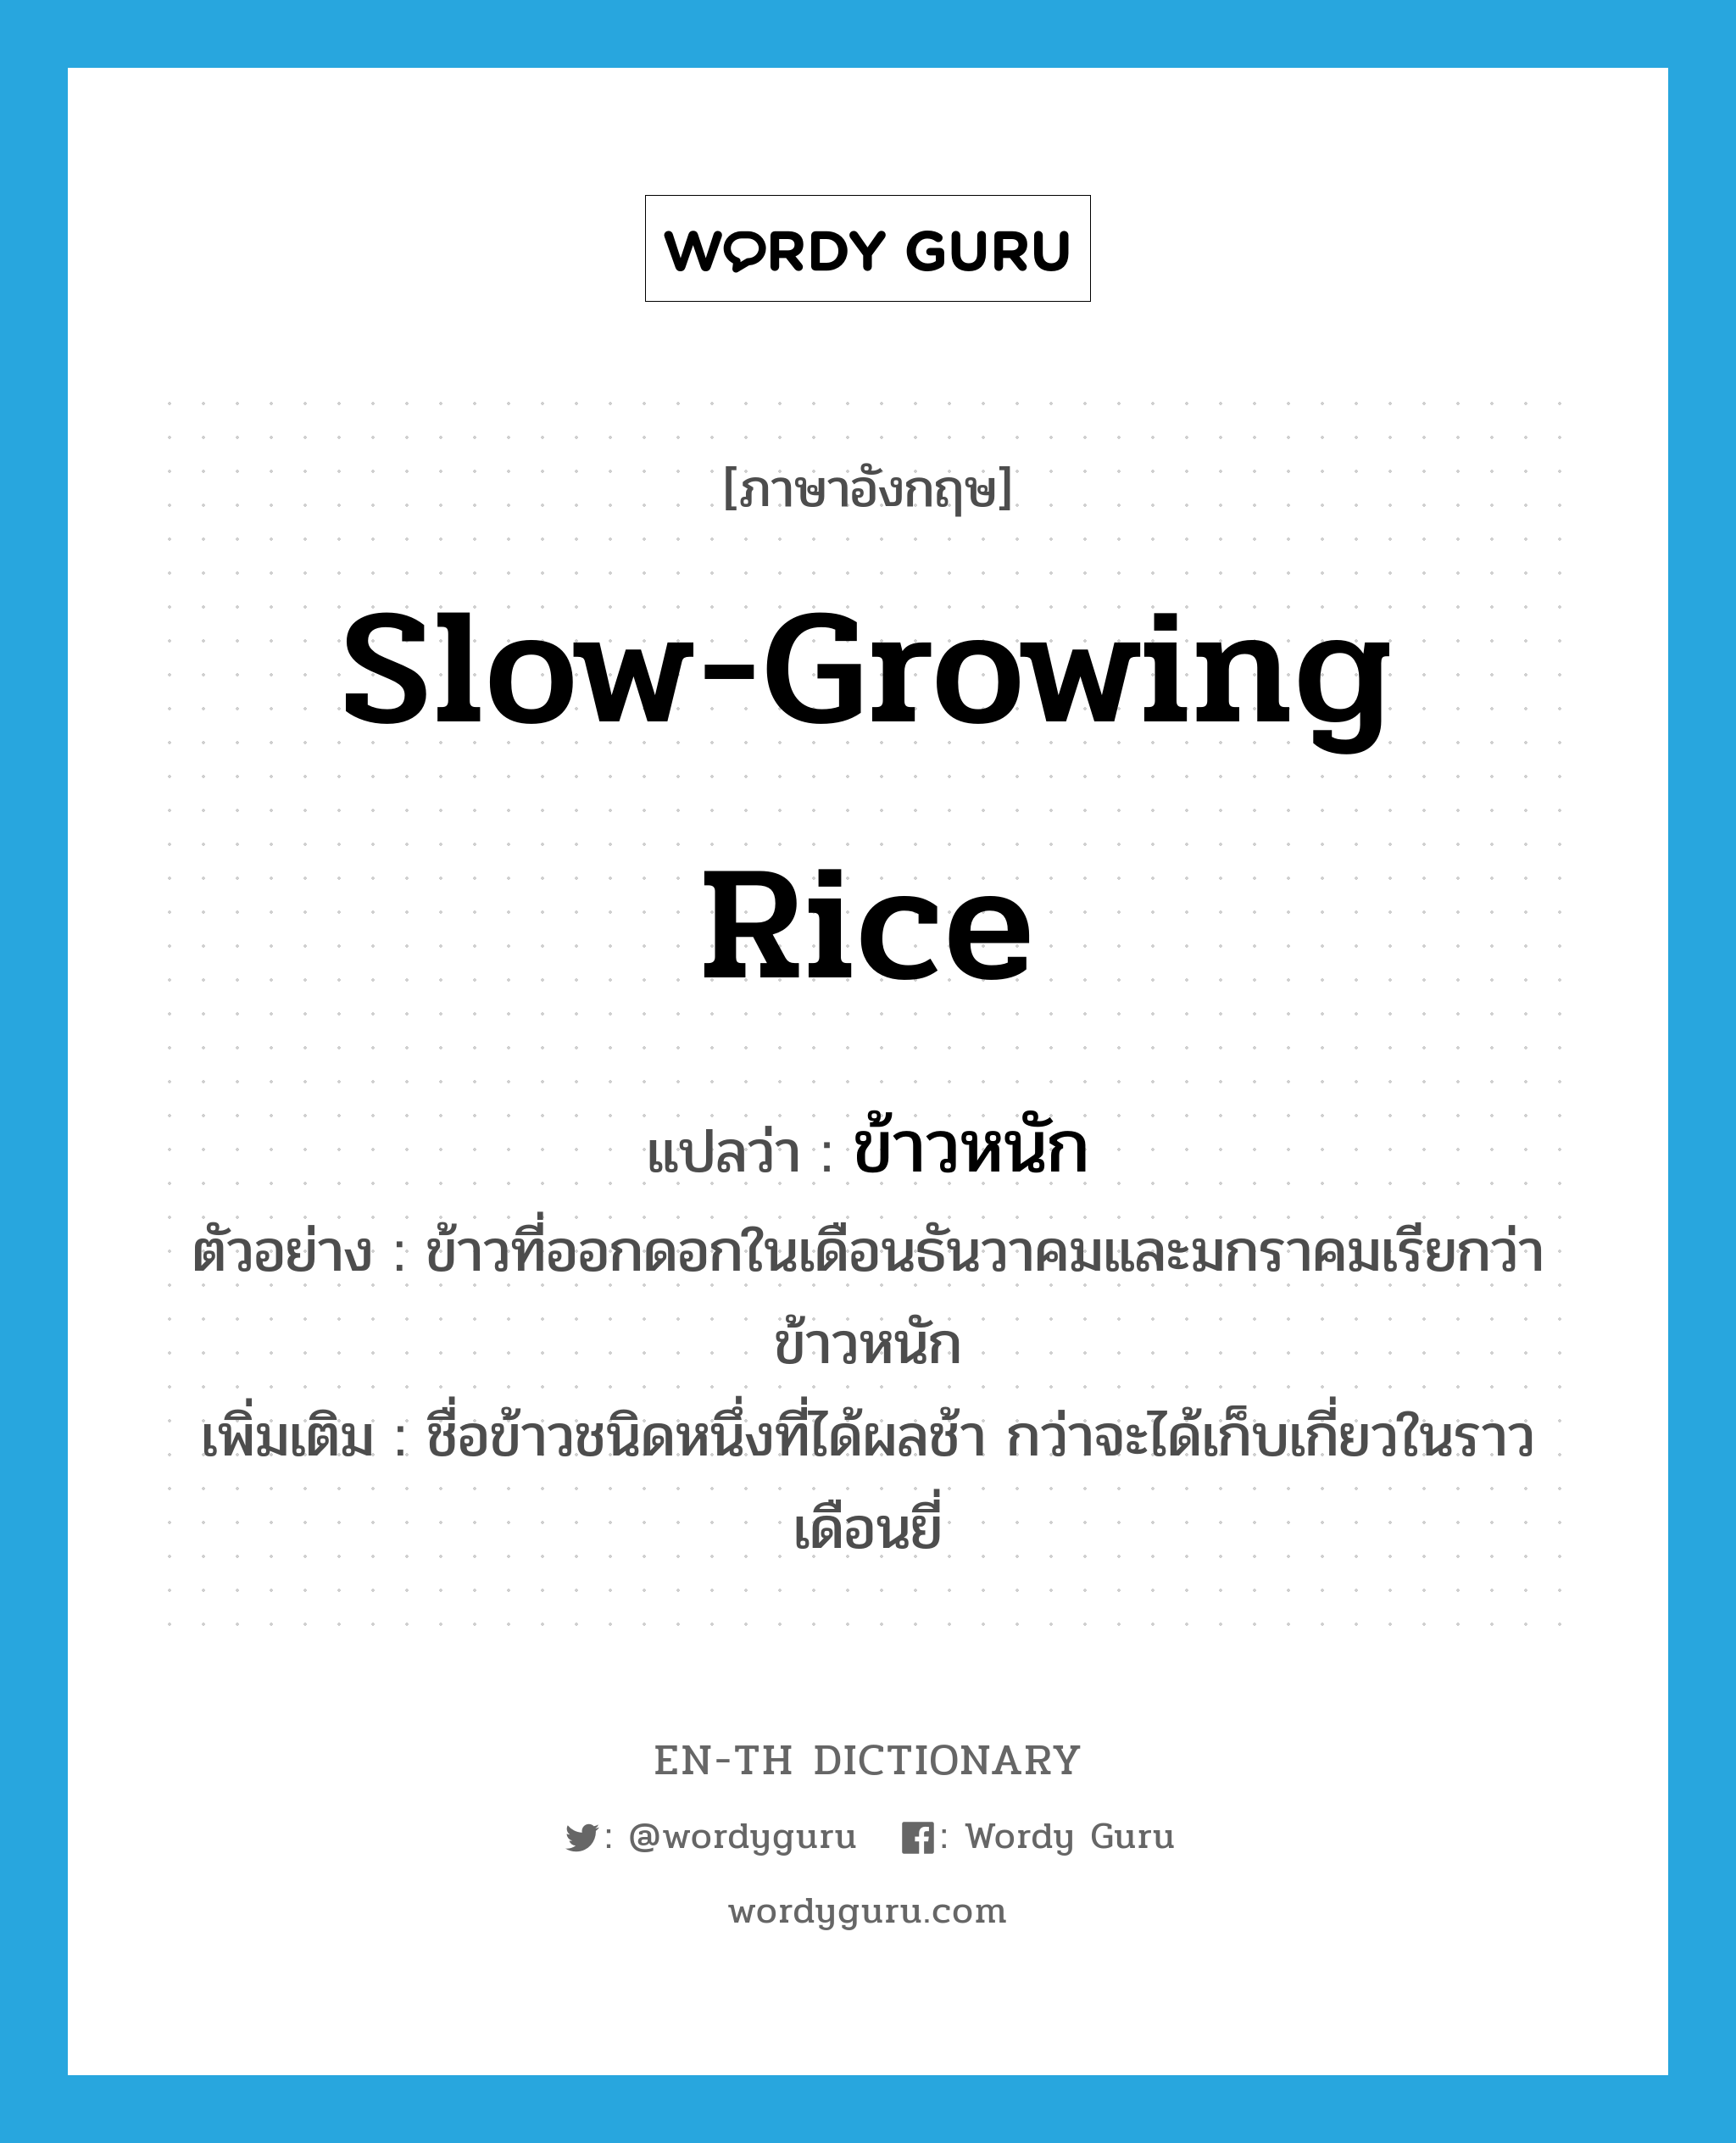 ข้าวหนัก ภาษาอังกฤษ?, คำศัพท์ภาษาอังกฤษ ข้าวหนัก แปลว่า slow-growing rice ประเภท N ตัวอย่าง ข้าวที่ออกดอกในเดือนธันวาคมและมกราคมเรียกว่า ข้าวหนัก เพิ่มเติม ชื่อข้าวชนิดหนึ่งที่ได้ผลช้า กว่าจะได้เก็บเกี่ยวในราวเดือนยี่ หมวด N